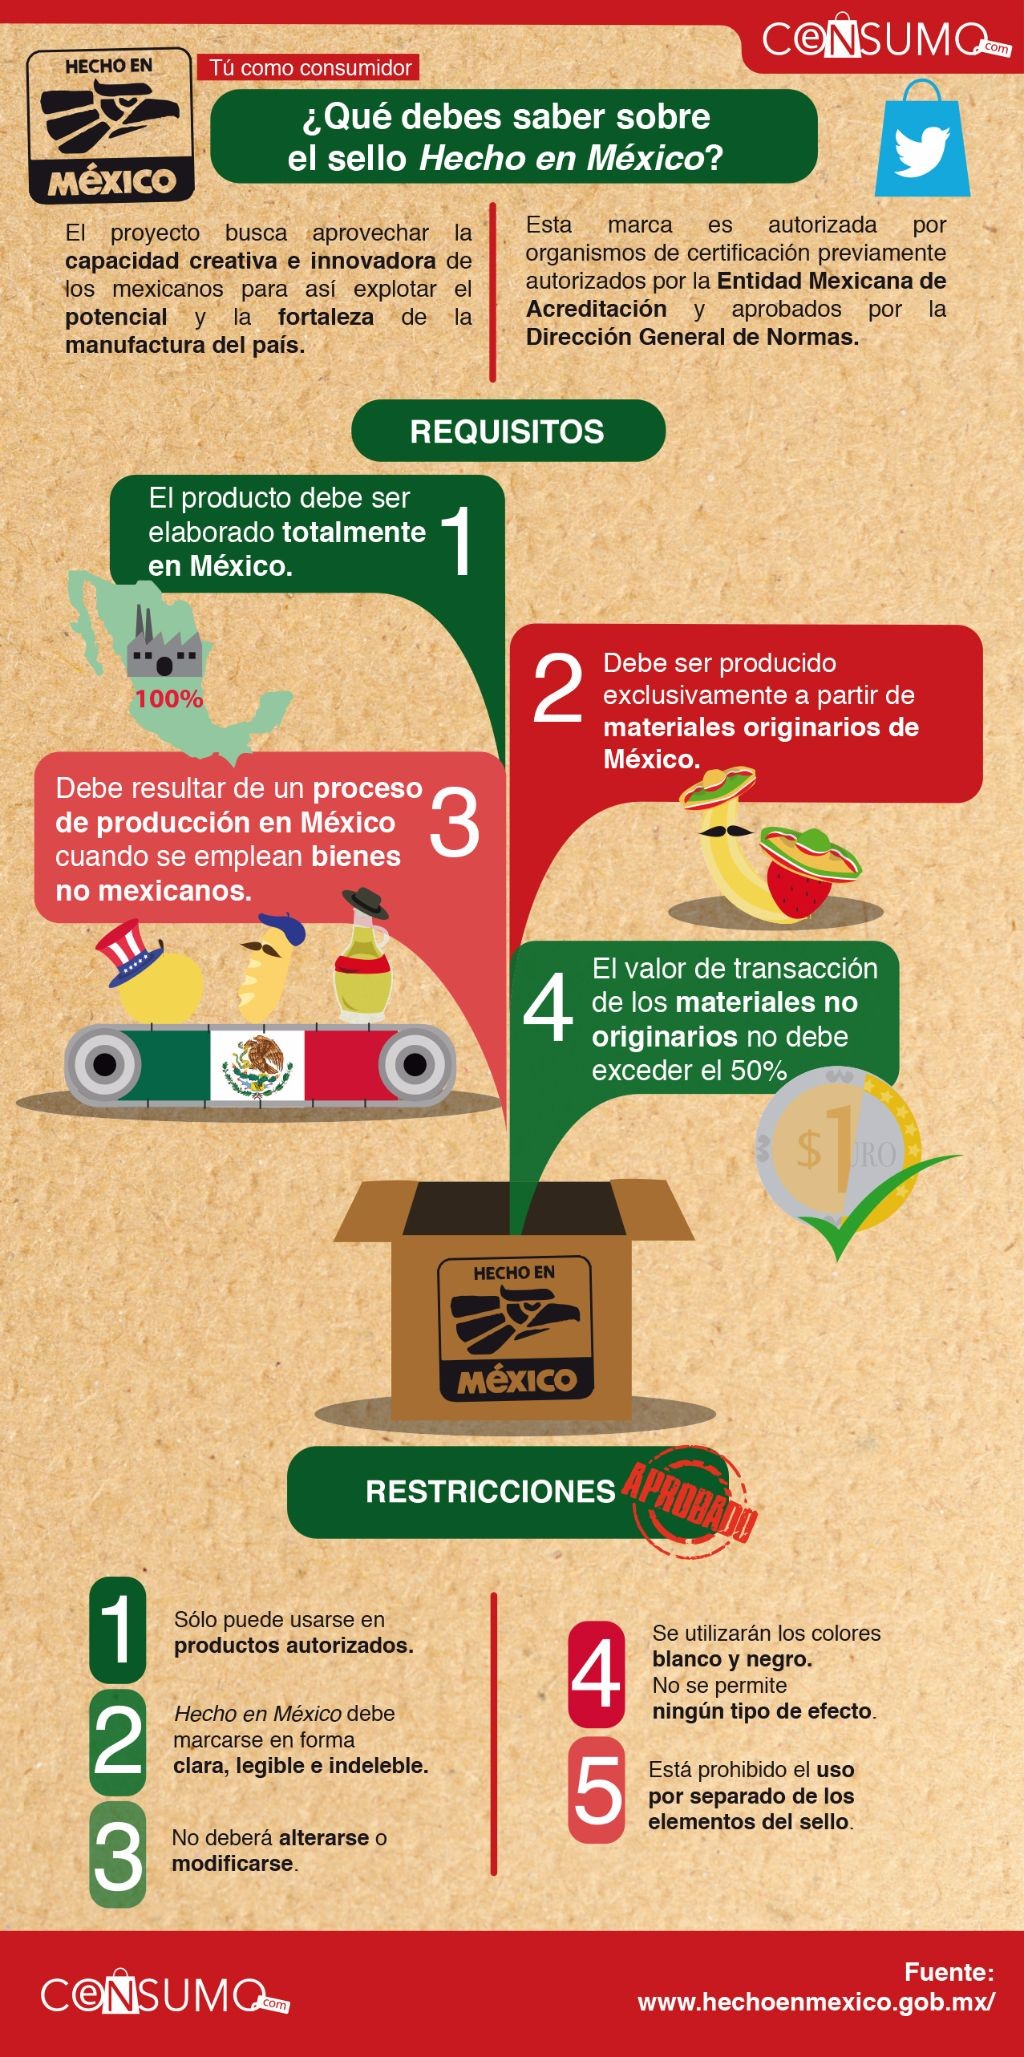 Tú como consumidor ¿qué debes saber sobre el sello Hecho en México?